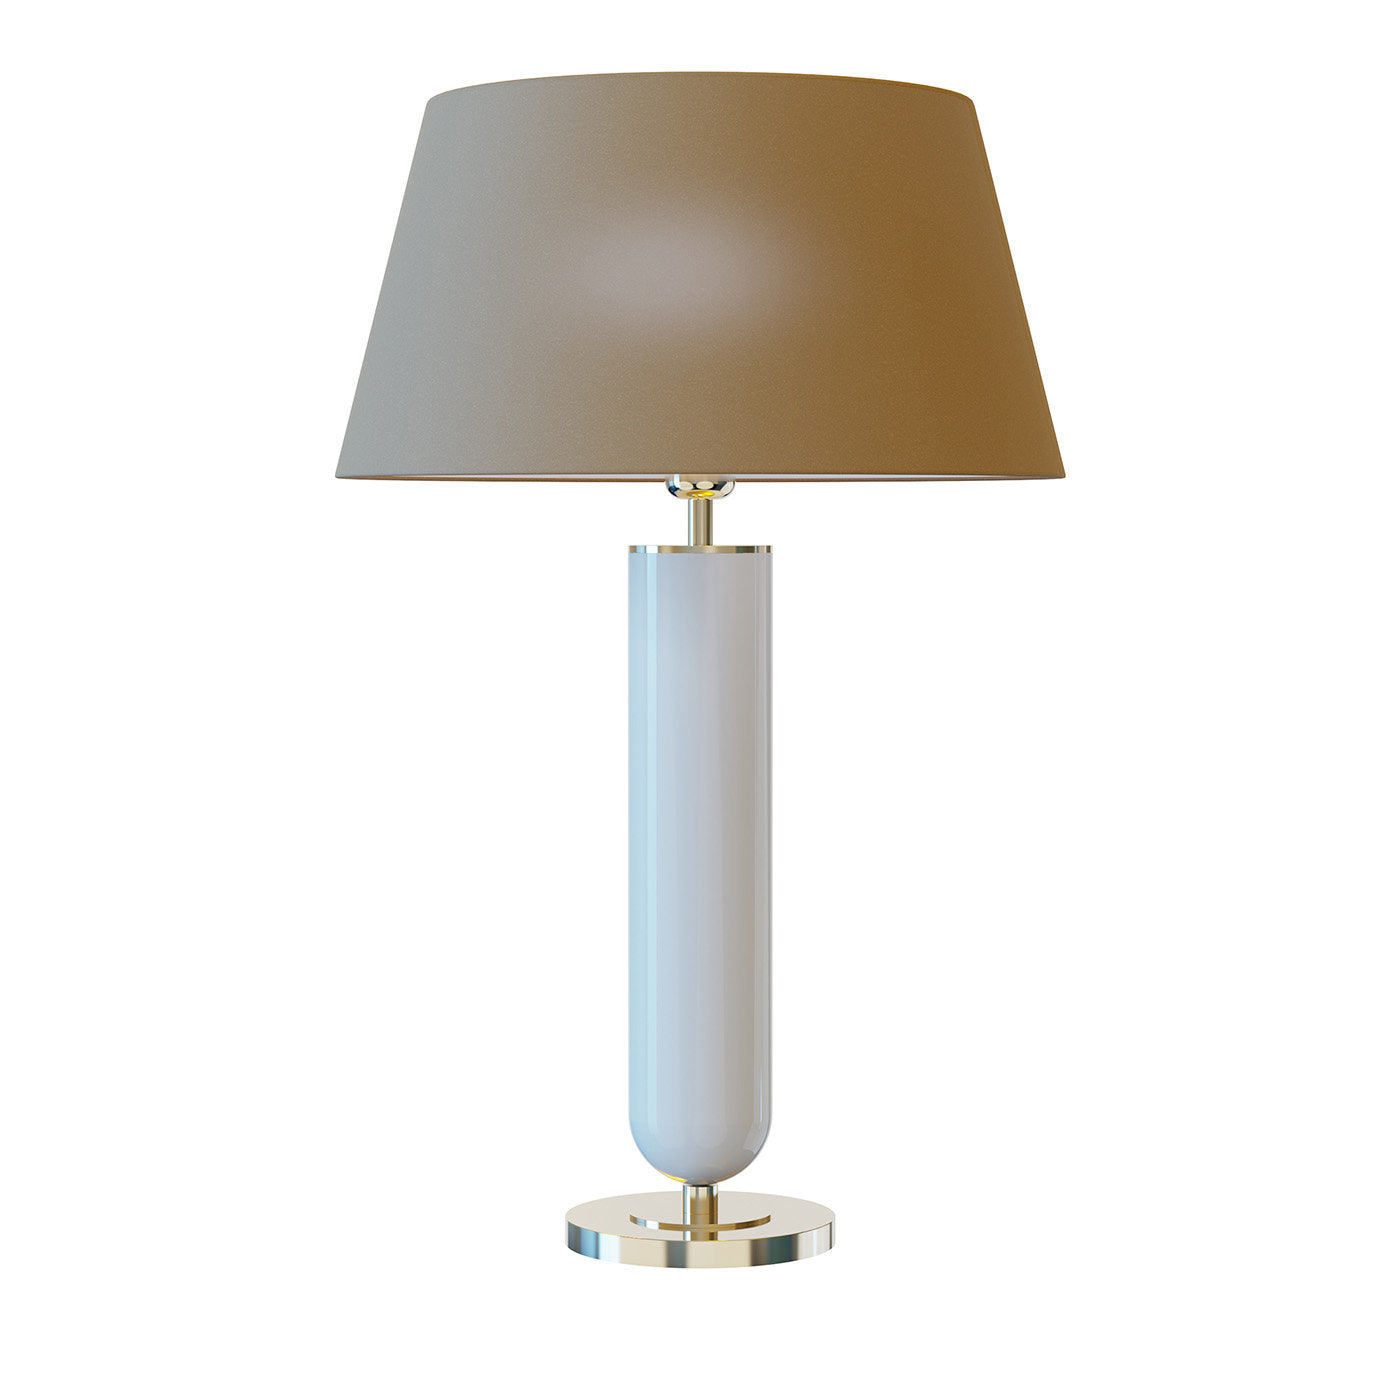 Ducas Table Lamp #1 - Main view